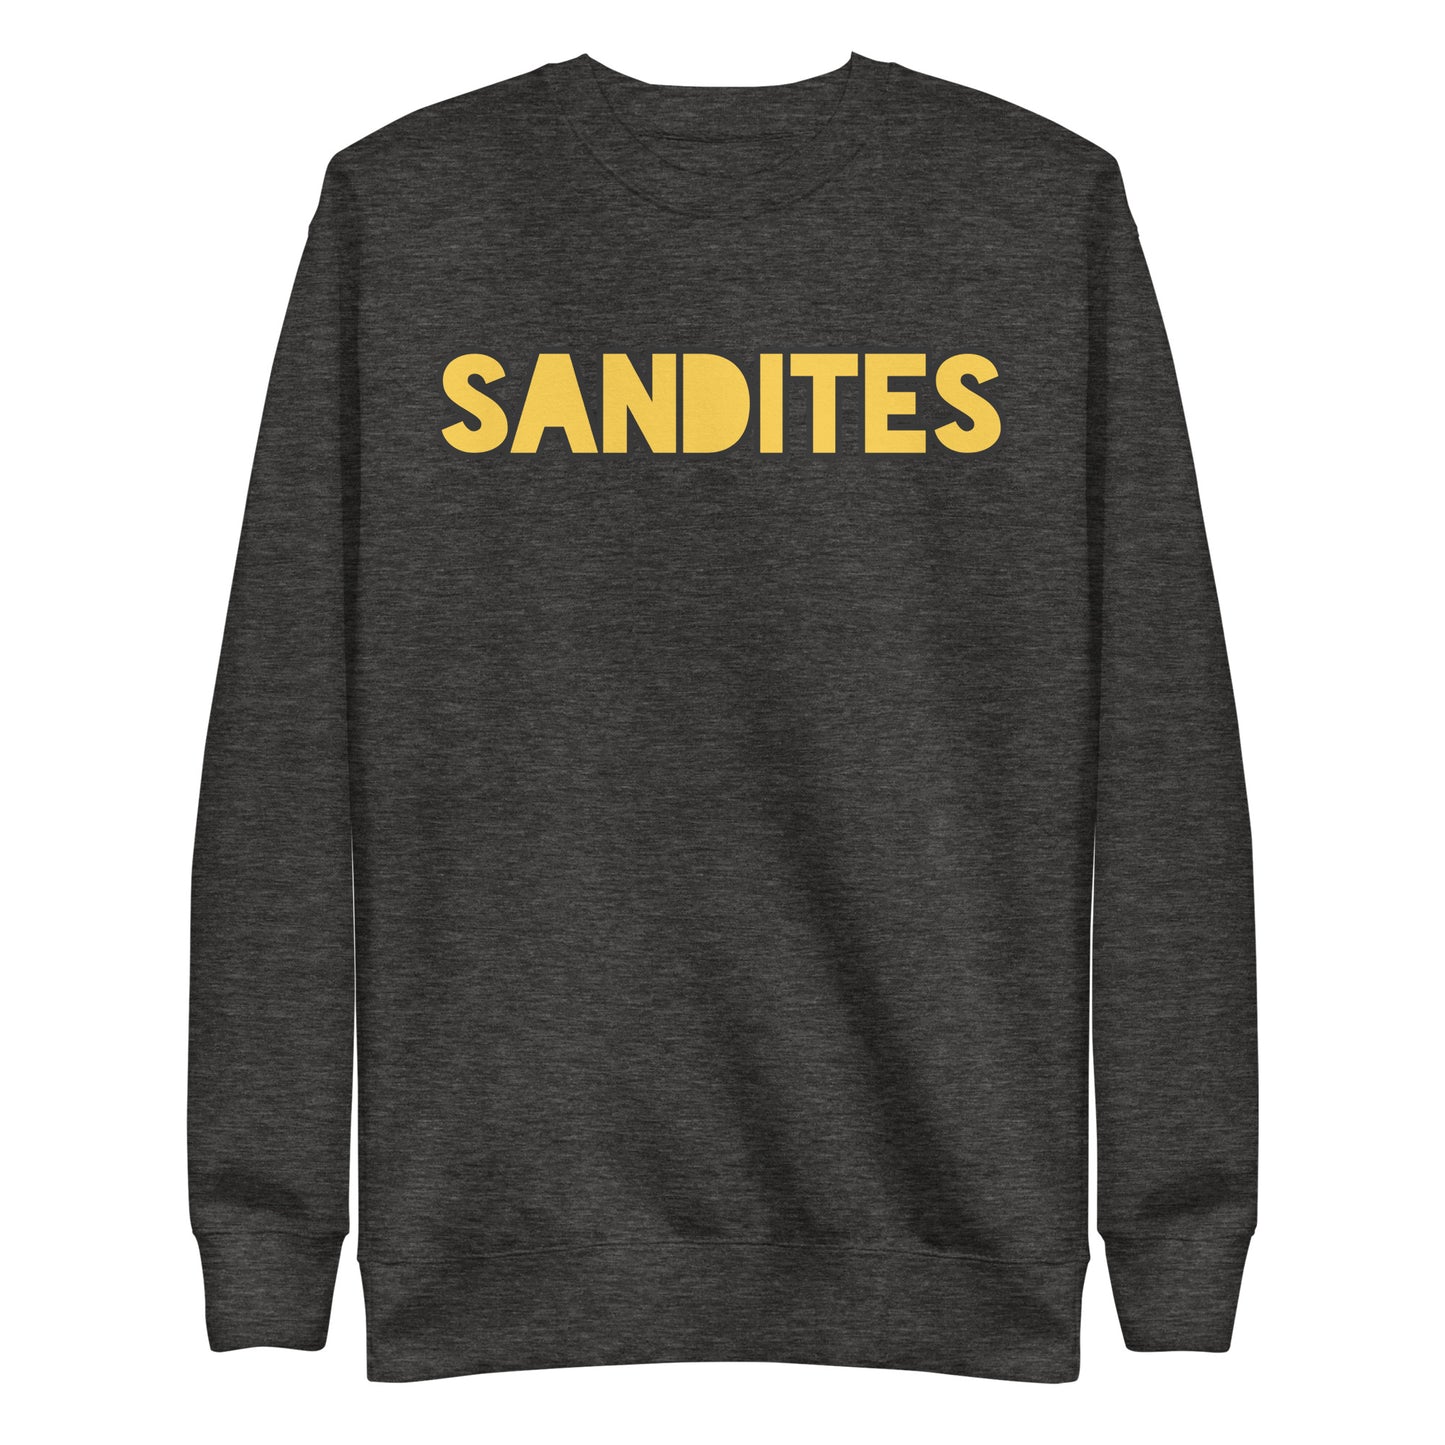 Sandites - Adult Sweatshirt